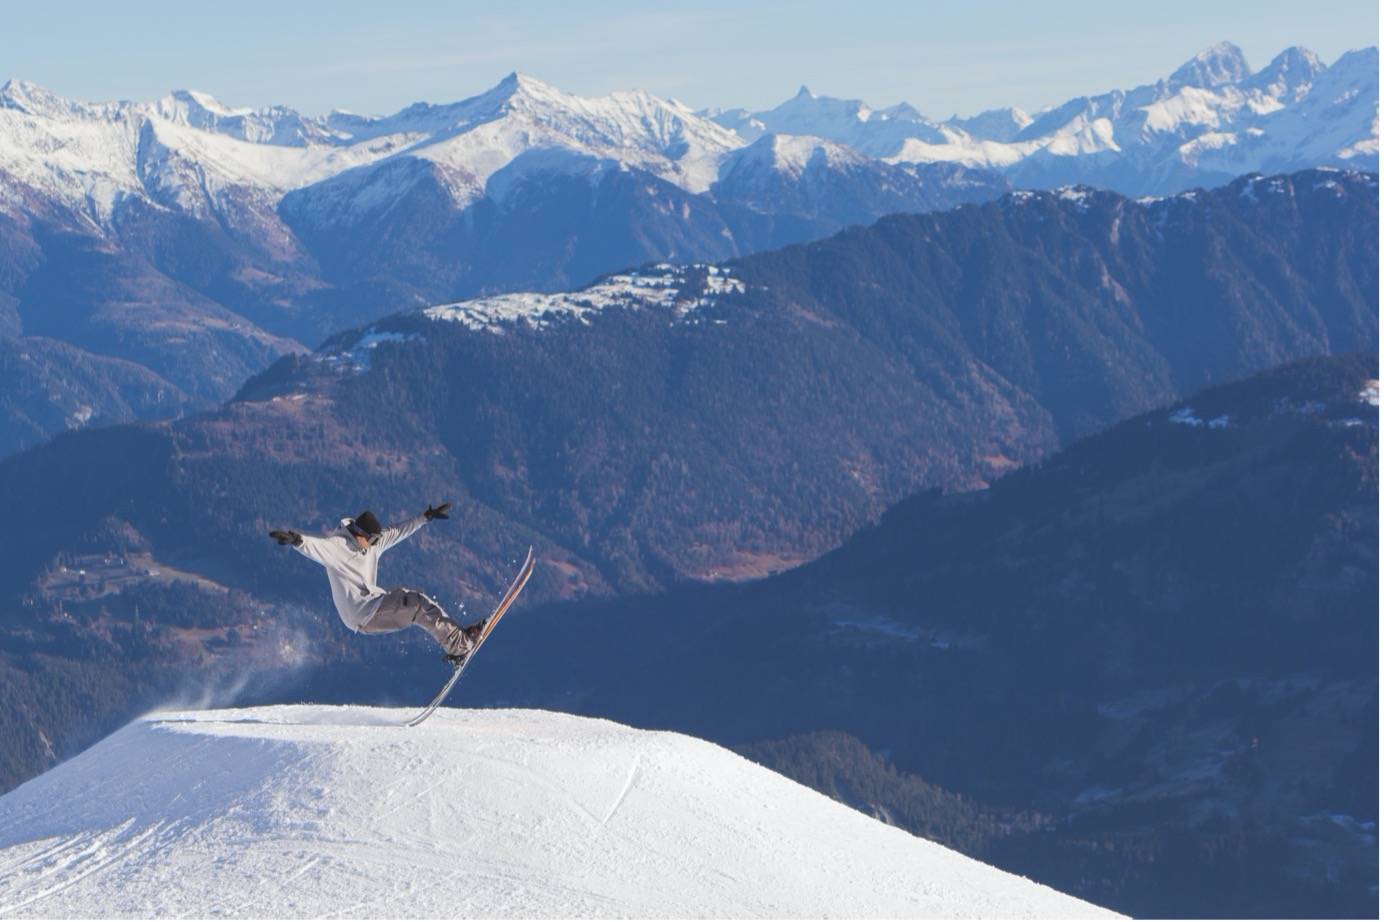 Skiing in Swiss